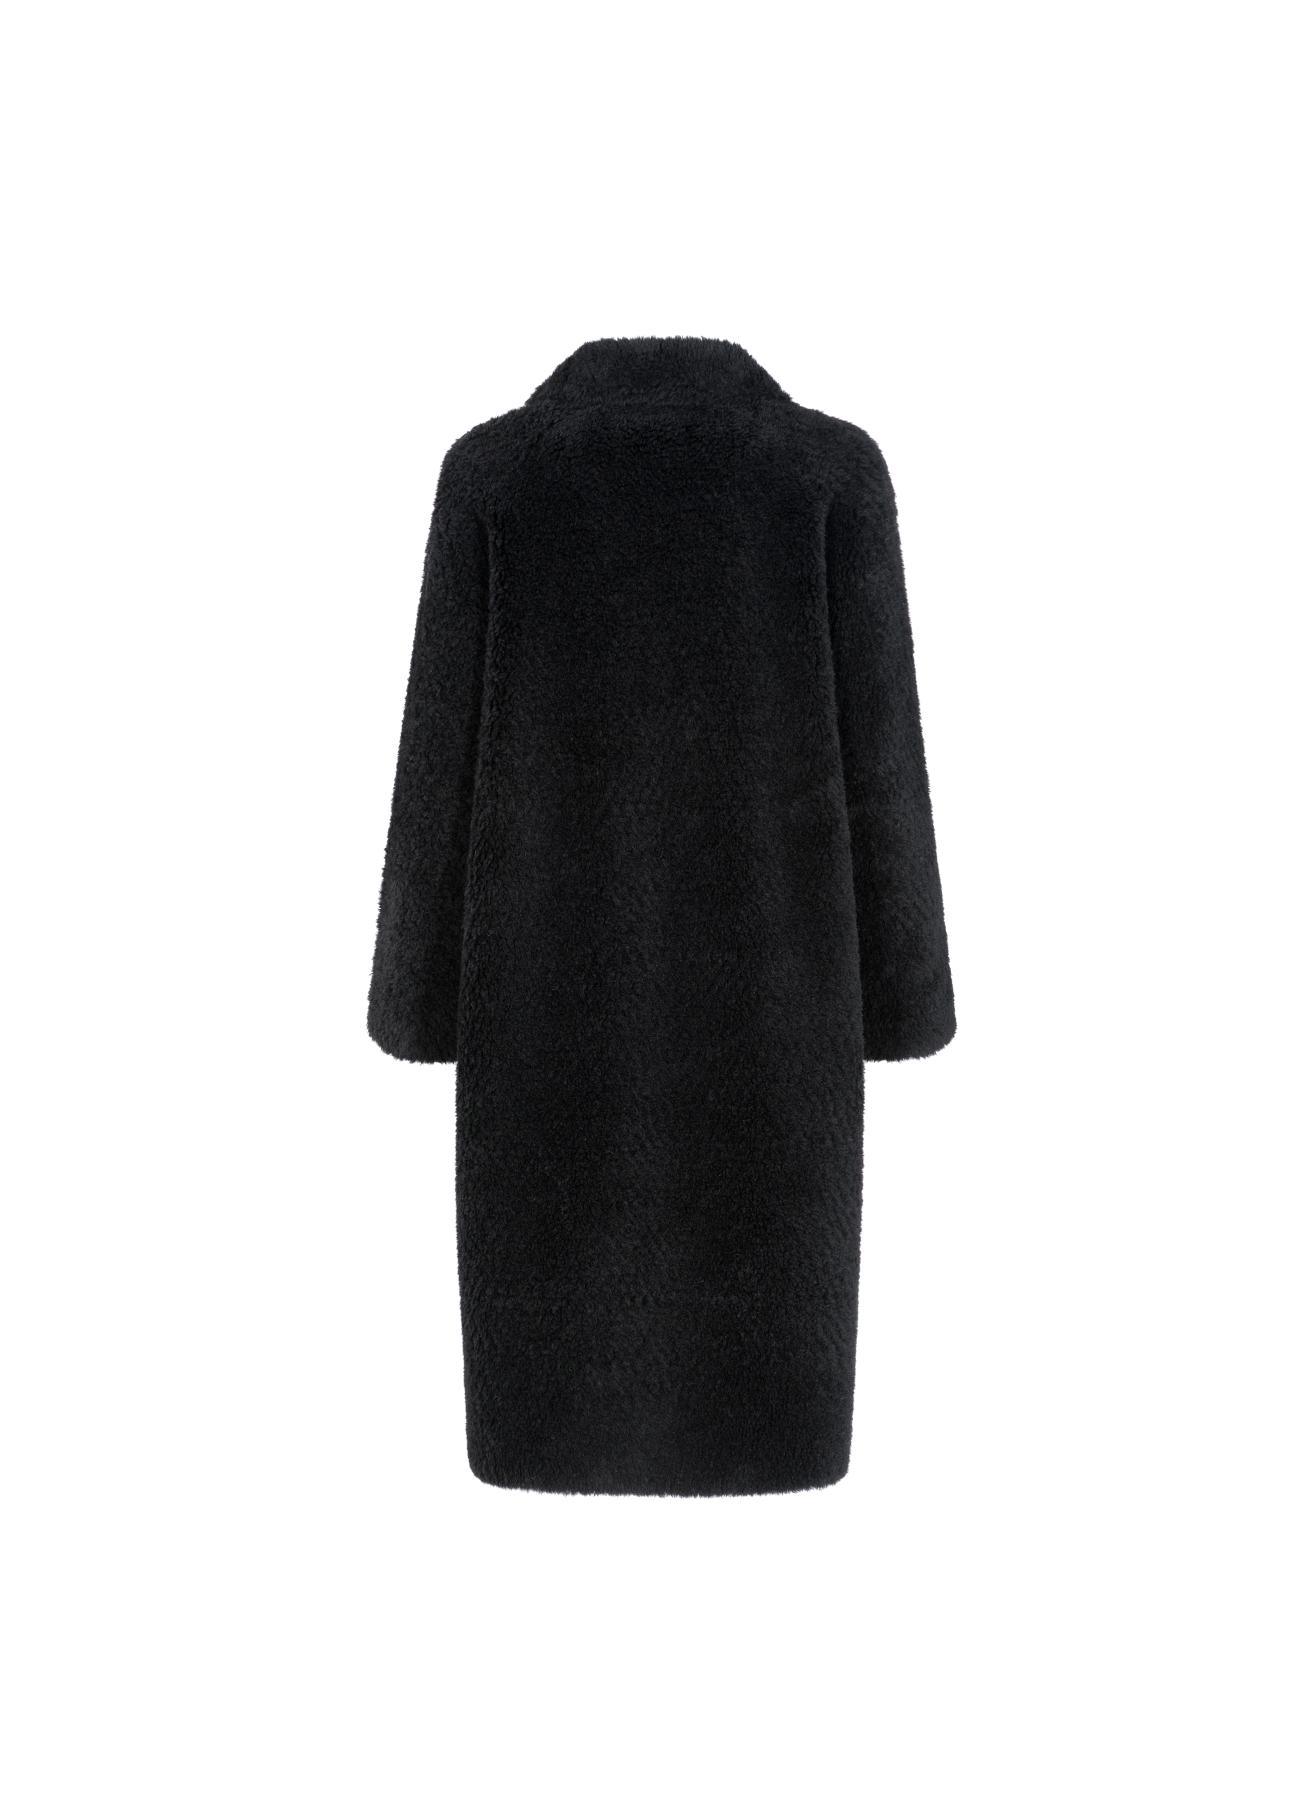 Czarny płaszcz wełniany damski na guziki FUTDT-0035-99(Z21)